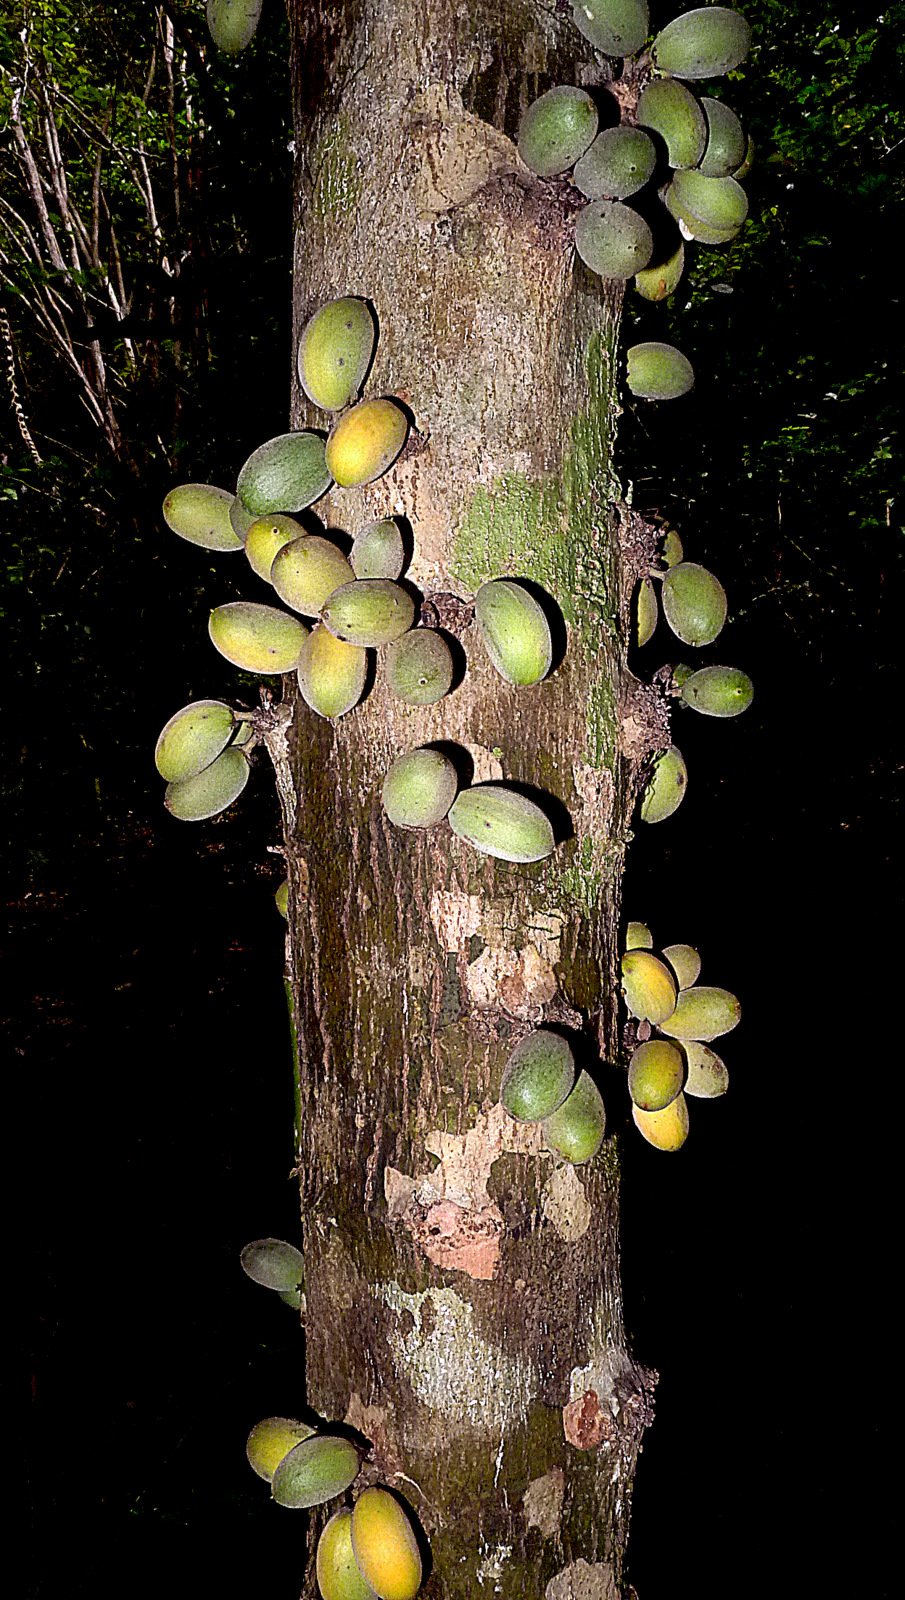 Pradosia lactescens "Marmixa"